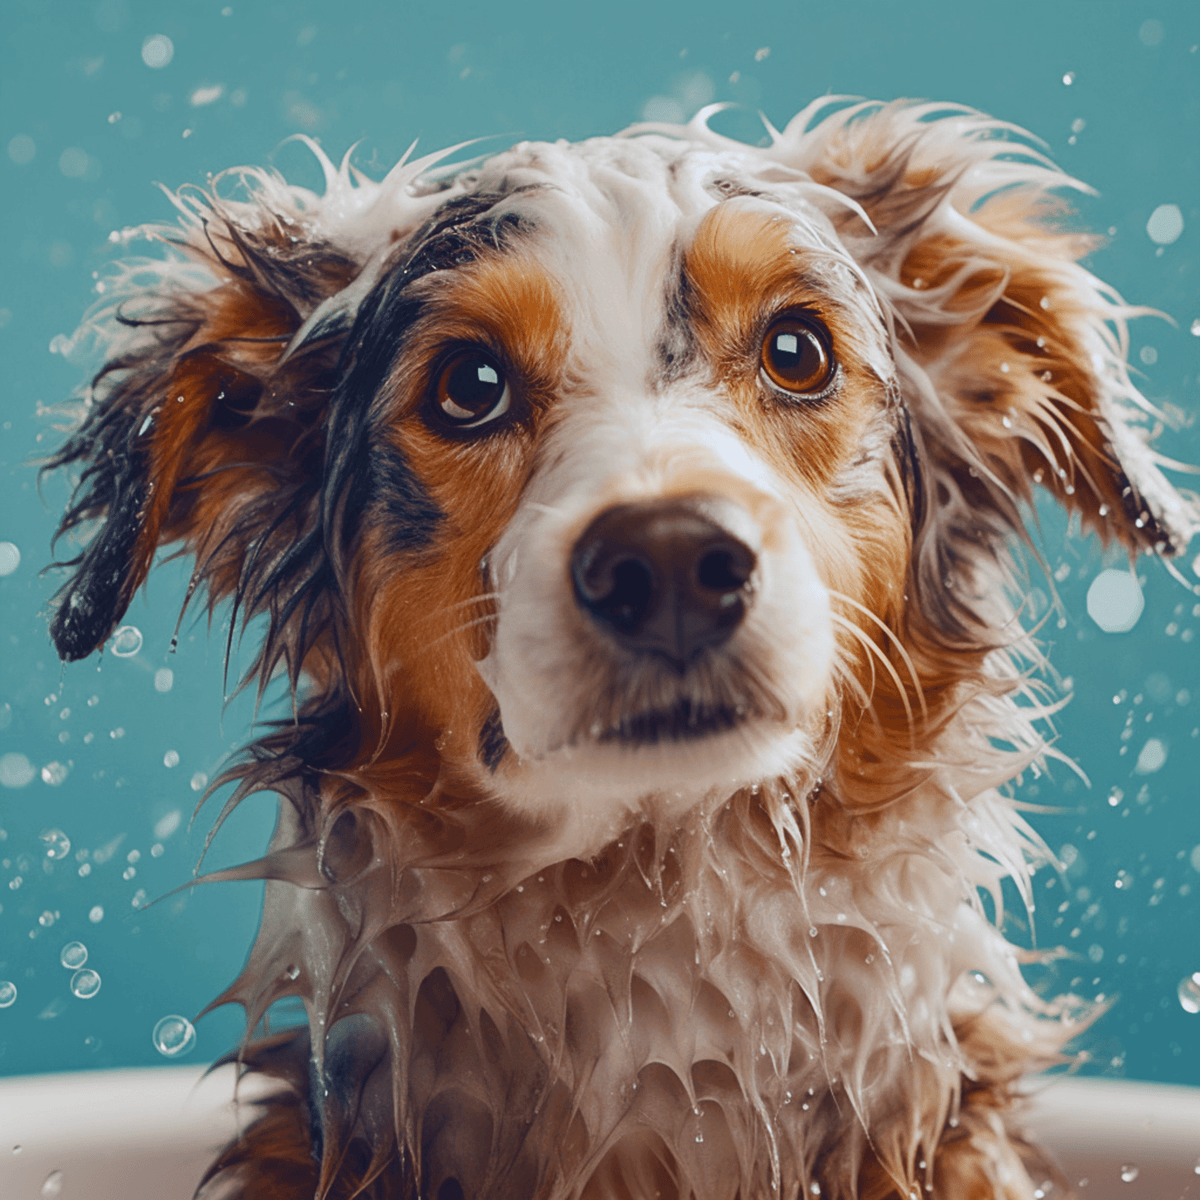 Cute Dog with shampoo